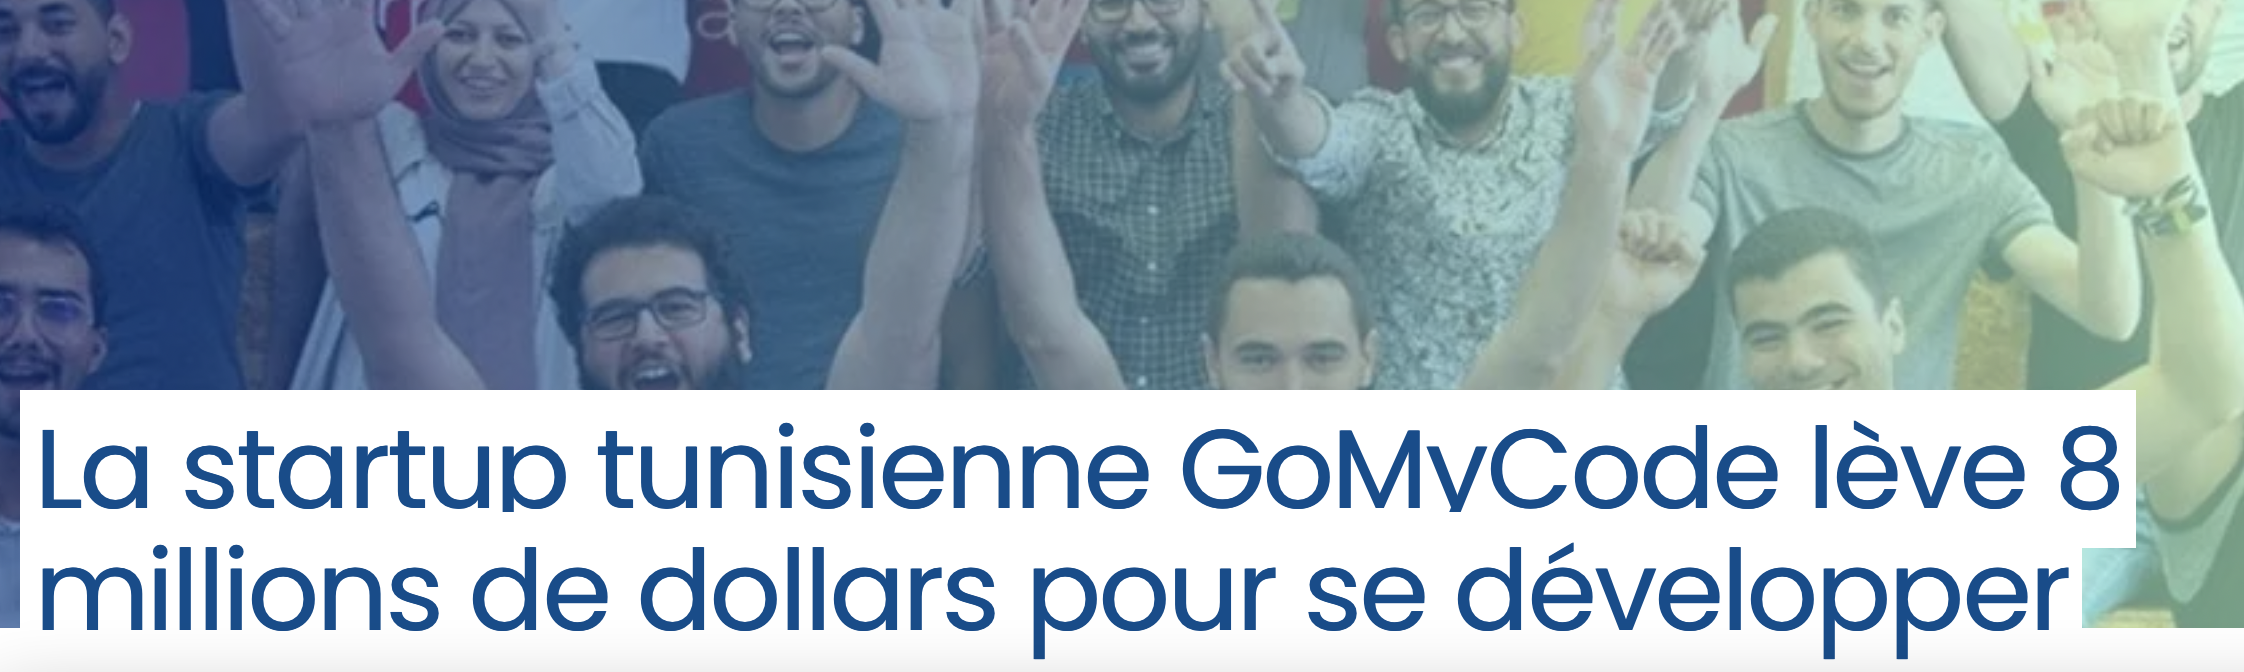 La startup tunisienne GoMyCode lève 8 millions de dollars pour se développer avec Proparco